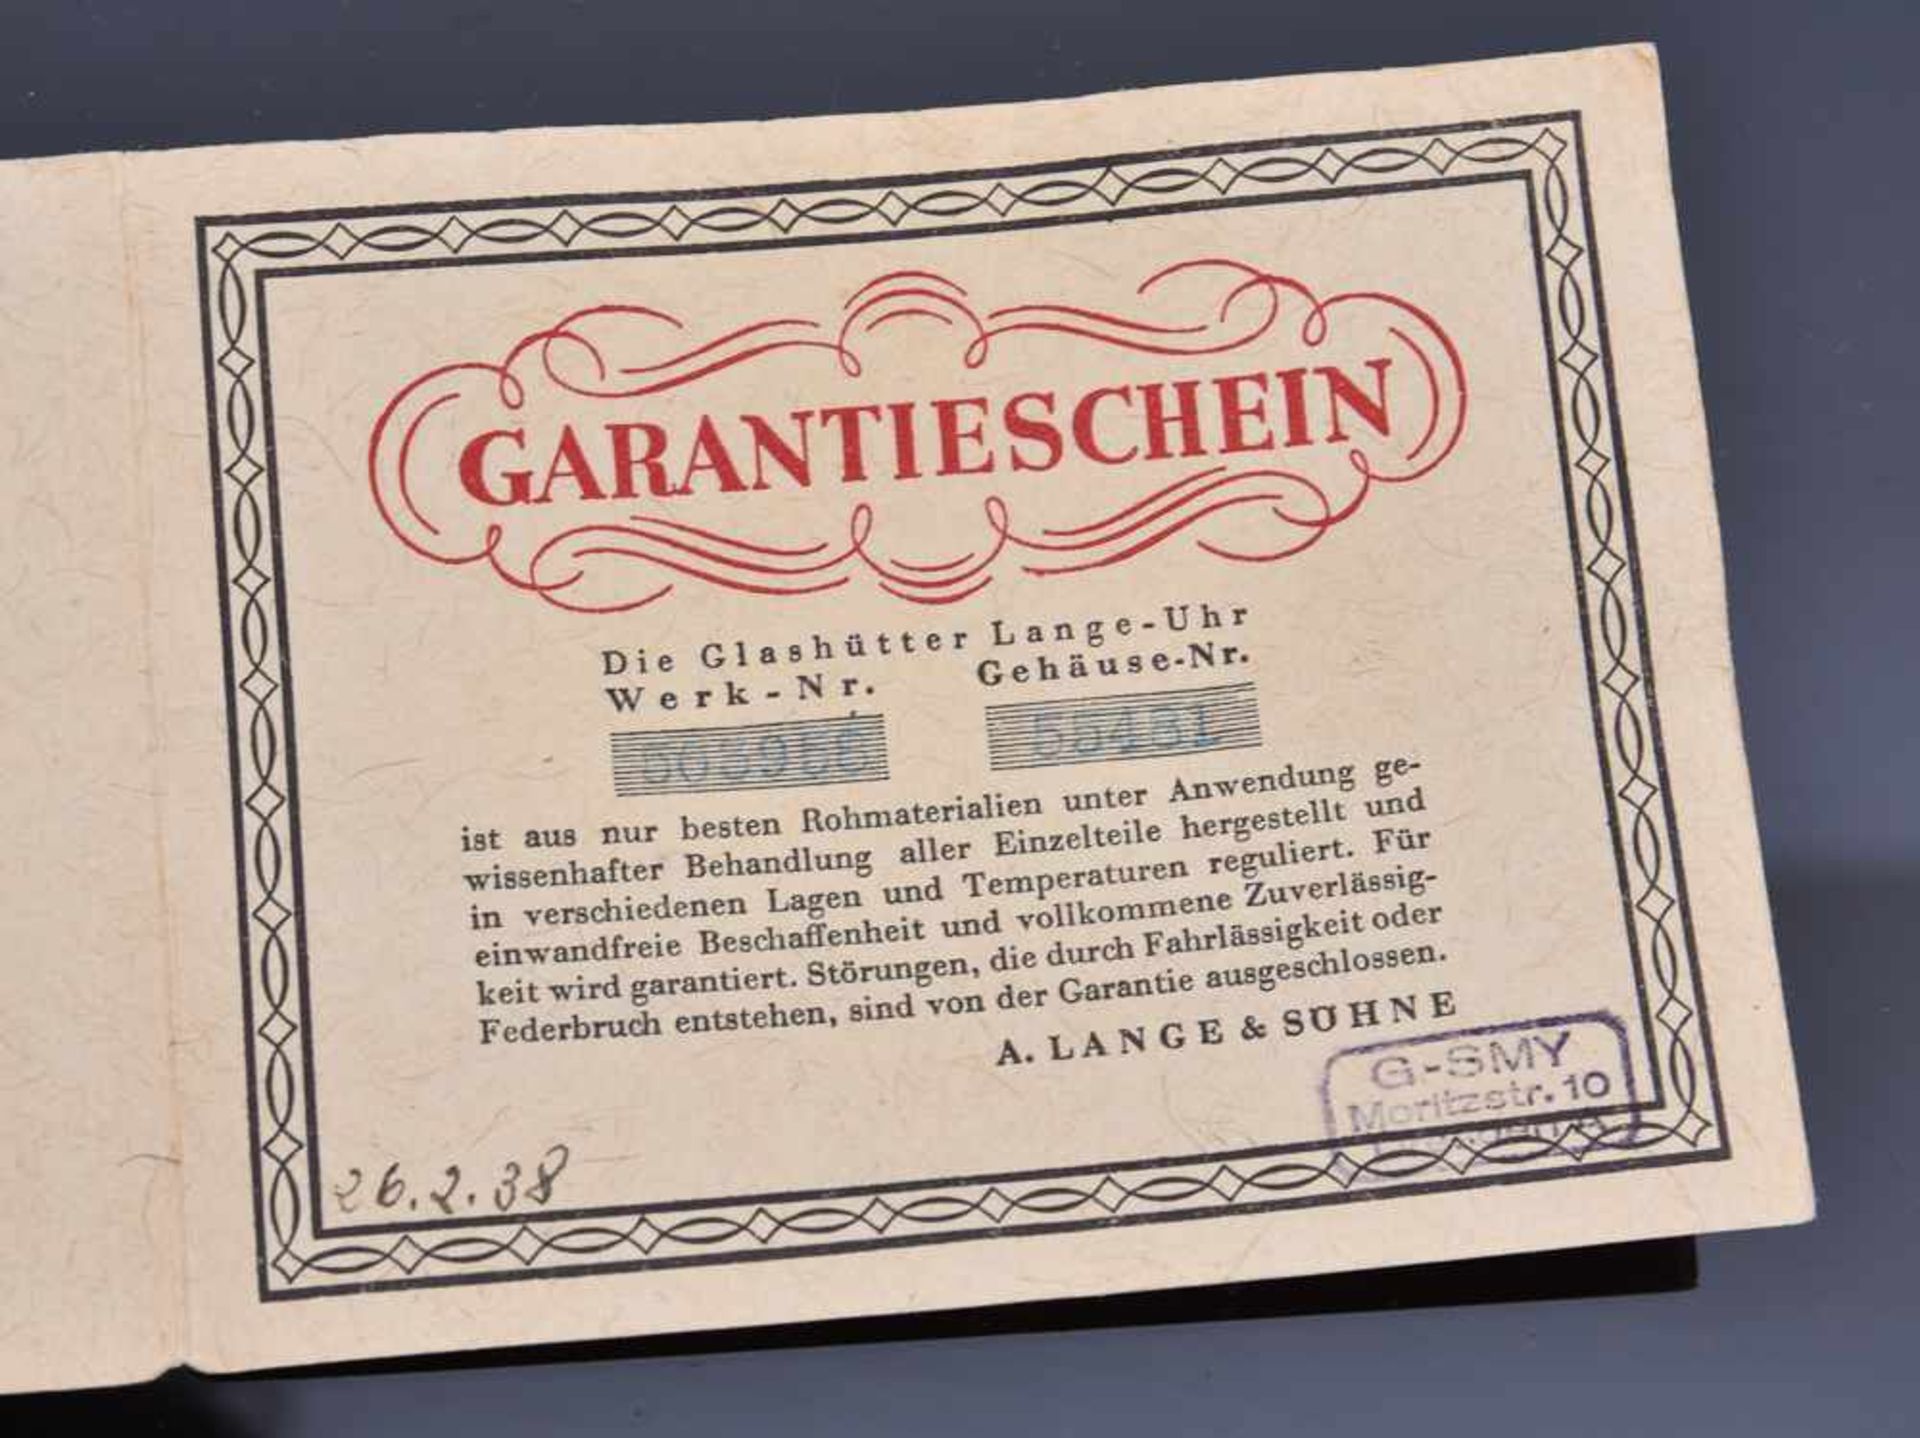 LANGE & SÖHNE: TASCHENUHR "OLIW", 585er GG, gestempelt, in Originalbox, 1938 Handaufzug (15 Steine), - Bild 3 aus 15